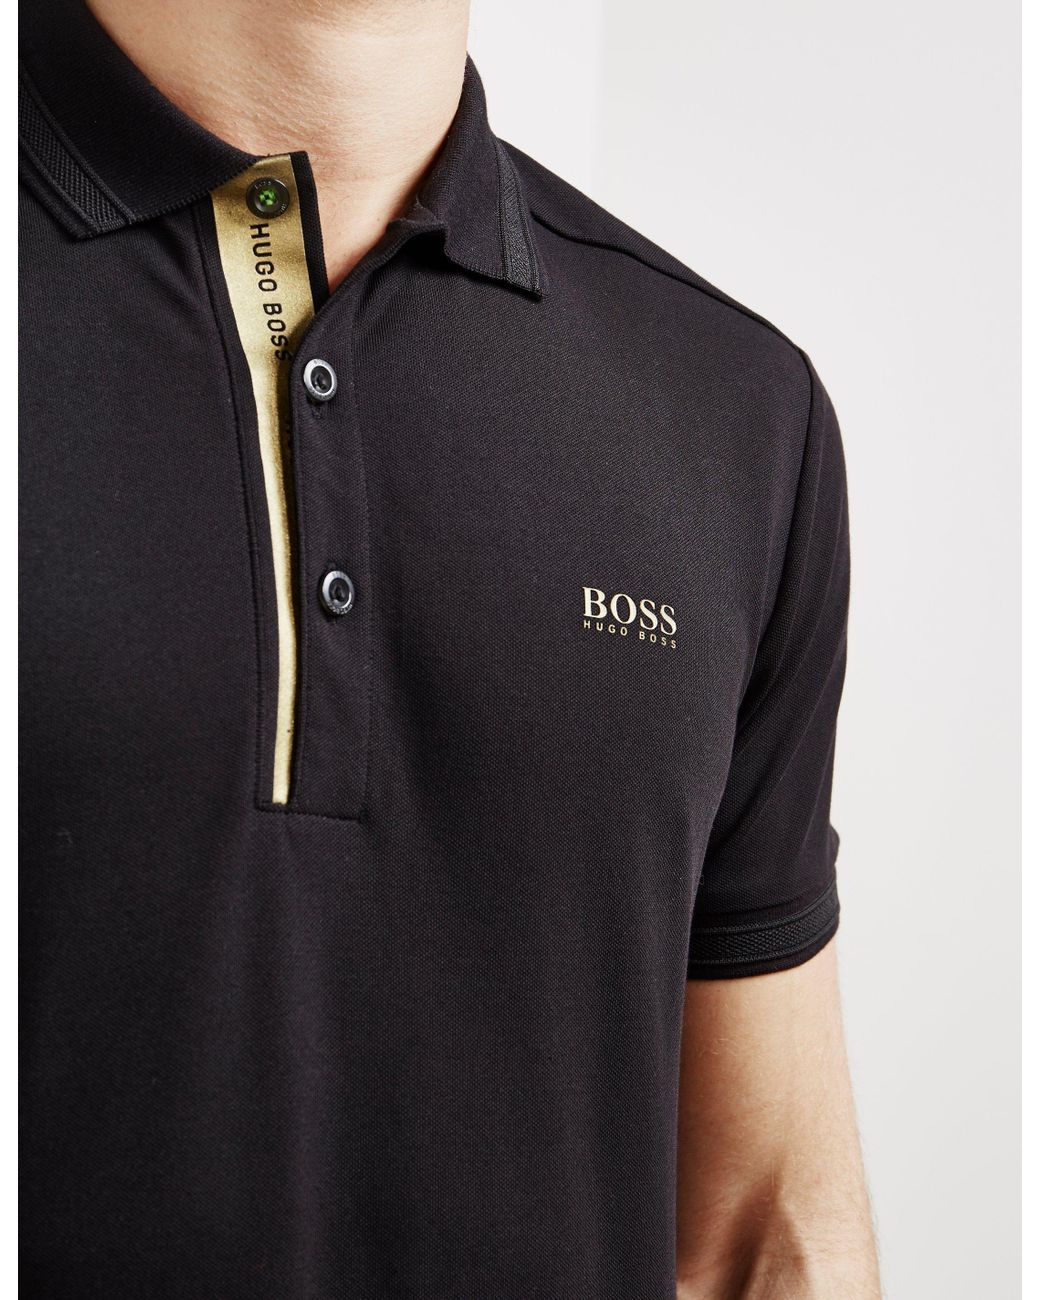 BOSS by HUGO BOSS Gold Placket Short Sleeve Polo Shirt Black for Men | Lyst